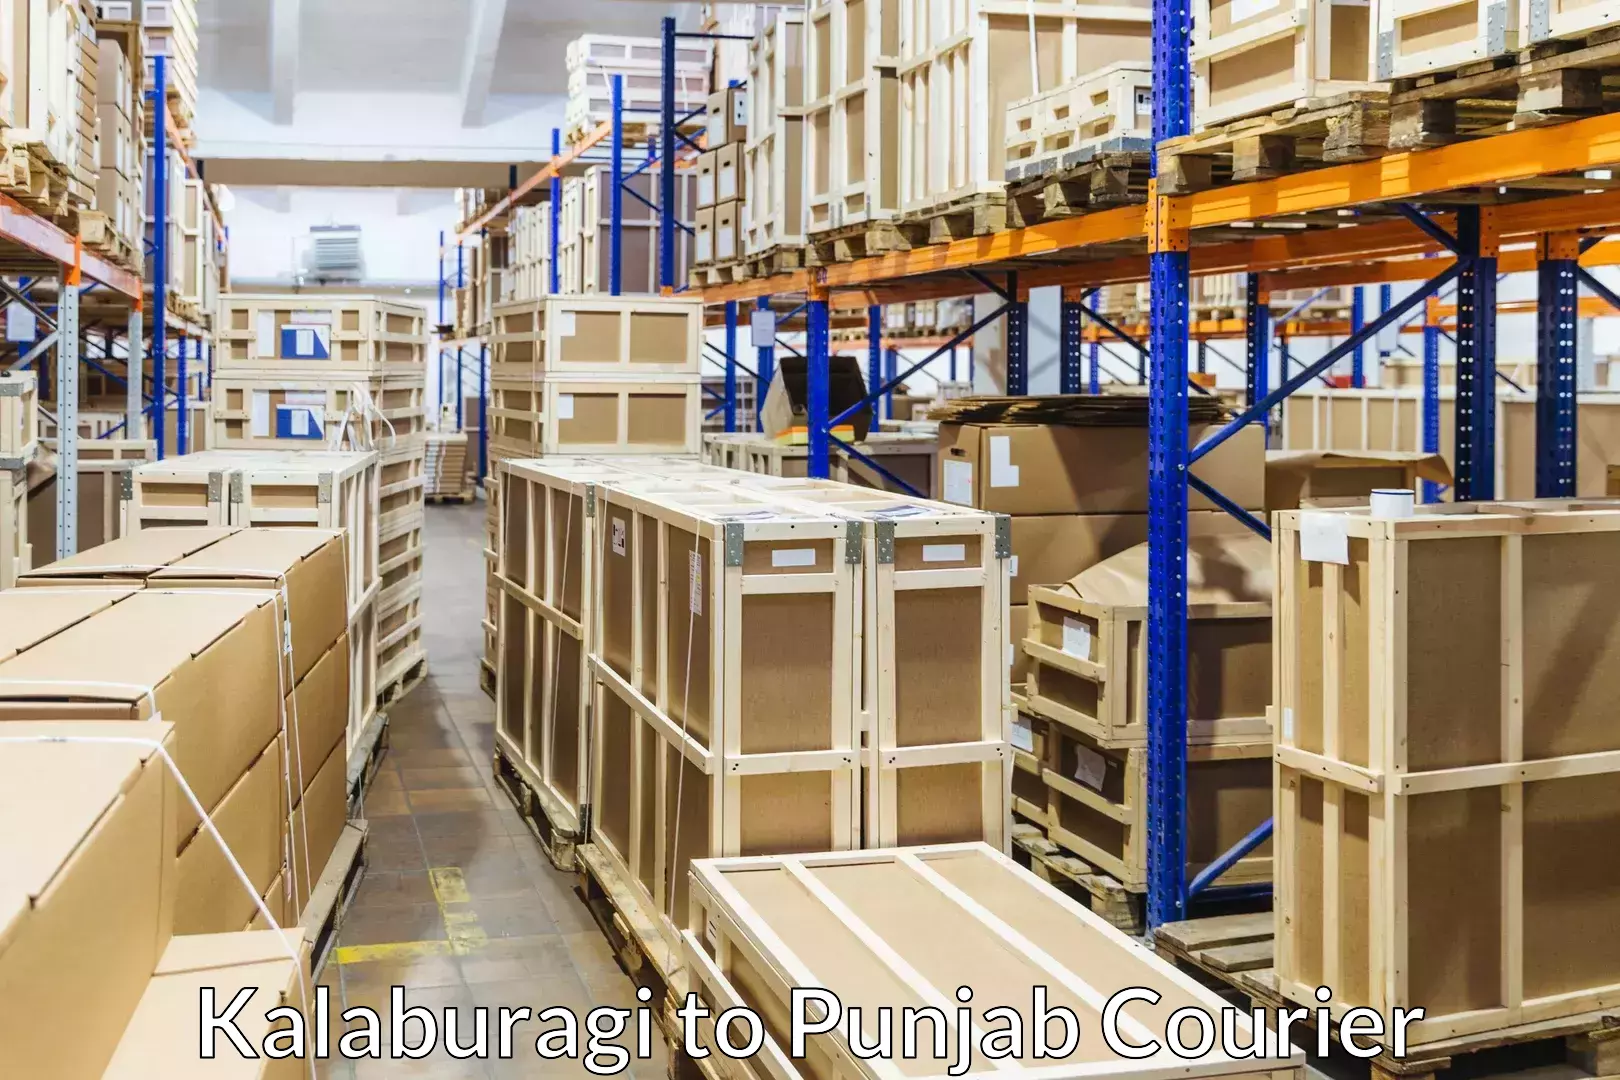 Furniture delivery service Kalaburagi to Punjab